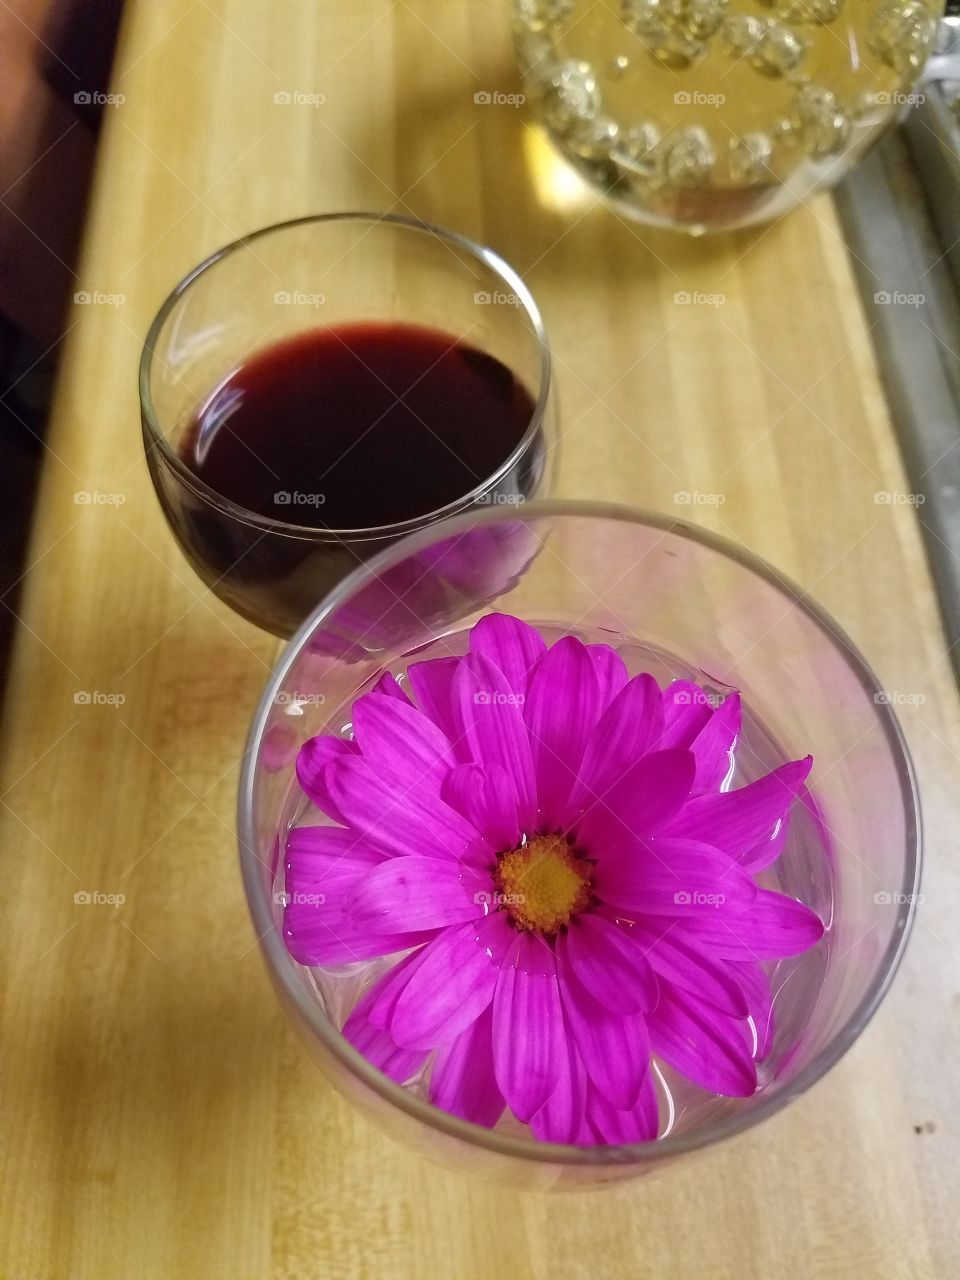 flowers n wine